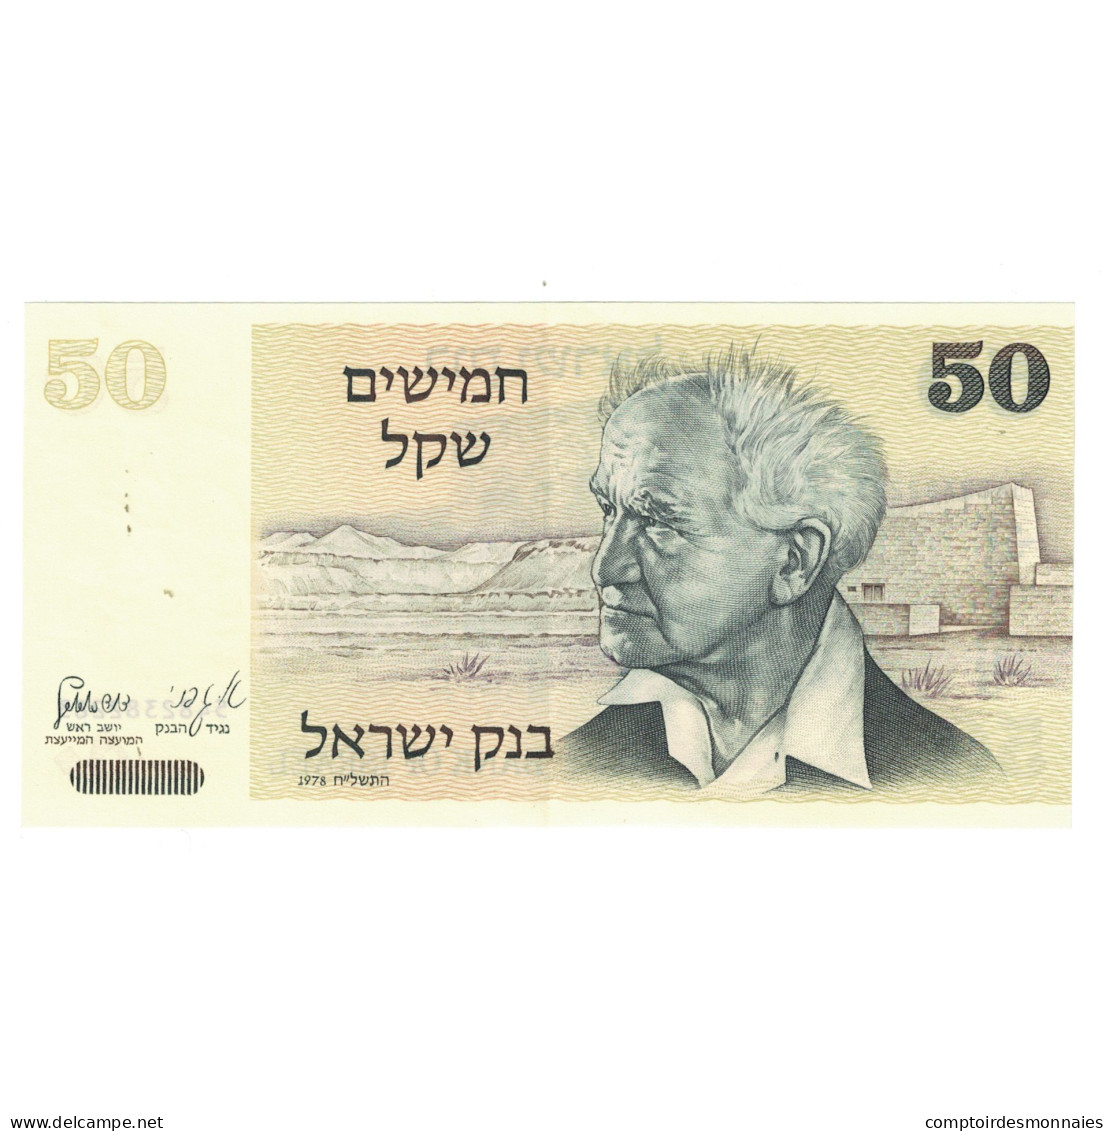 Billet, Israël, 50 Sheqalim, Undated (1980), KM:46a, NEUF - Israel